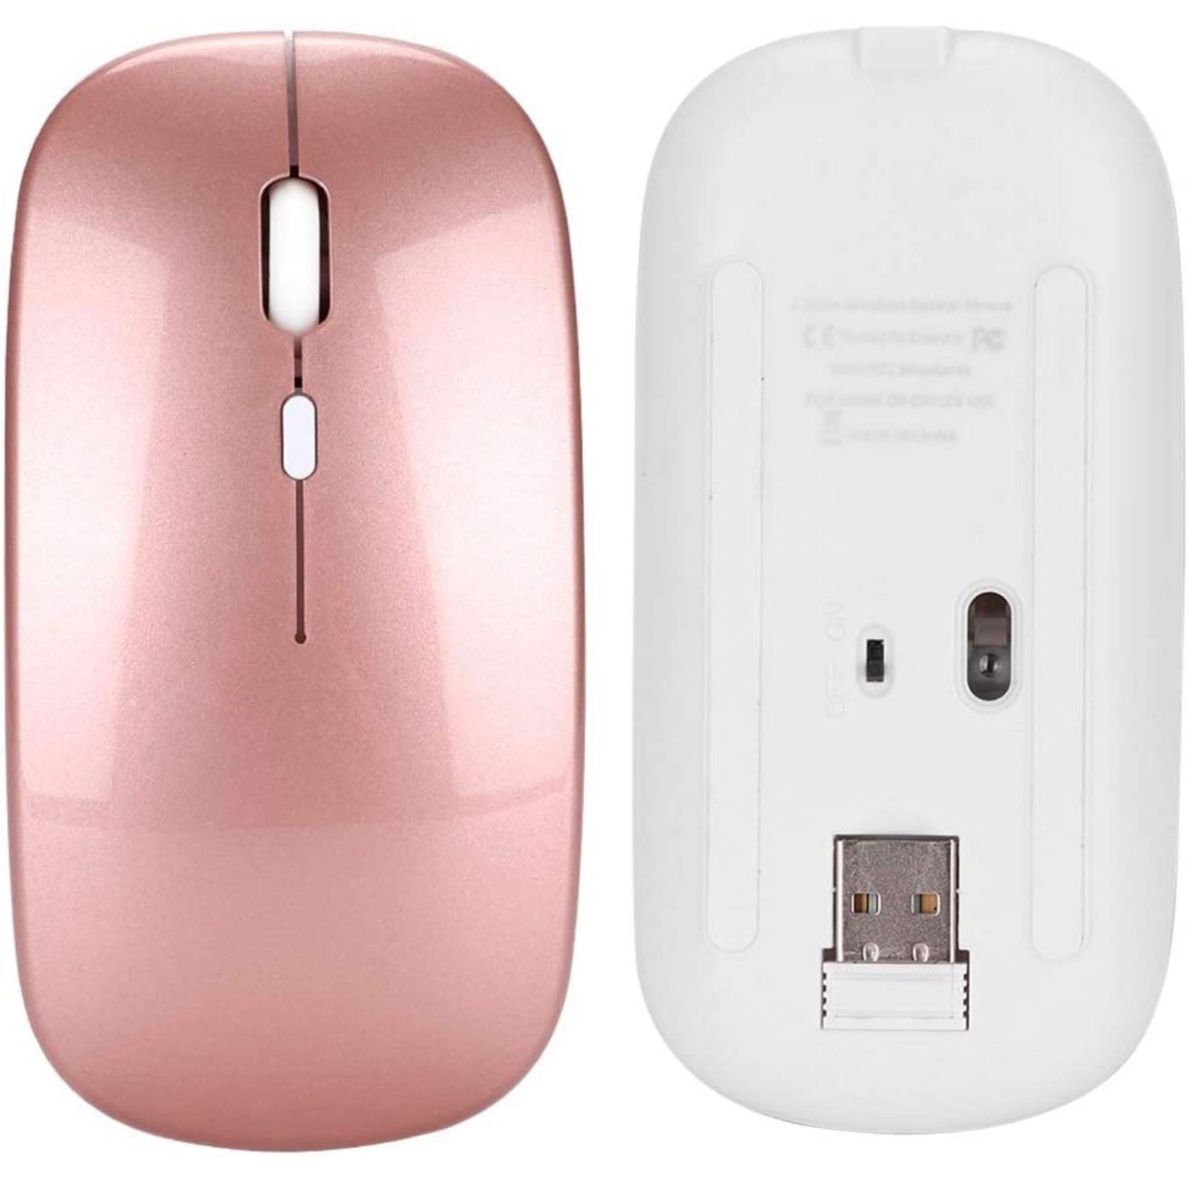 充電式無線マウス1200dpi高精度2.4Gワイヤレスマウス 超軽量 携帯便利 静音タイプ（カチカチ音がしない）